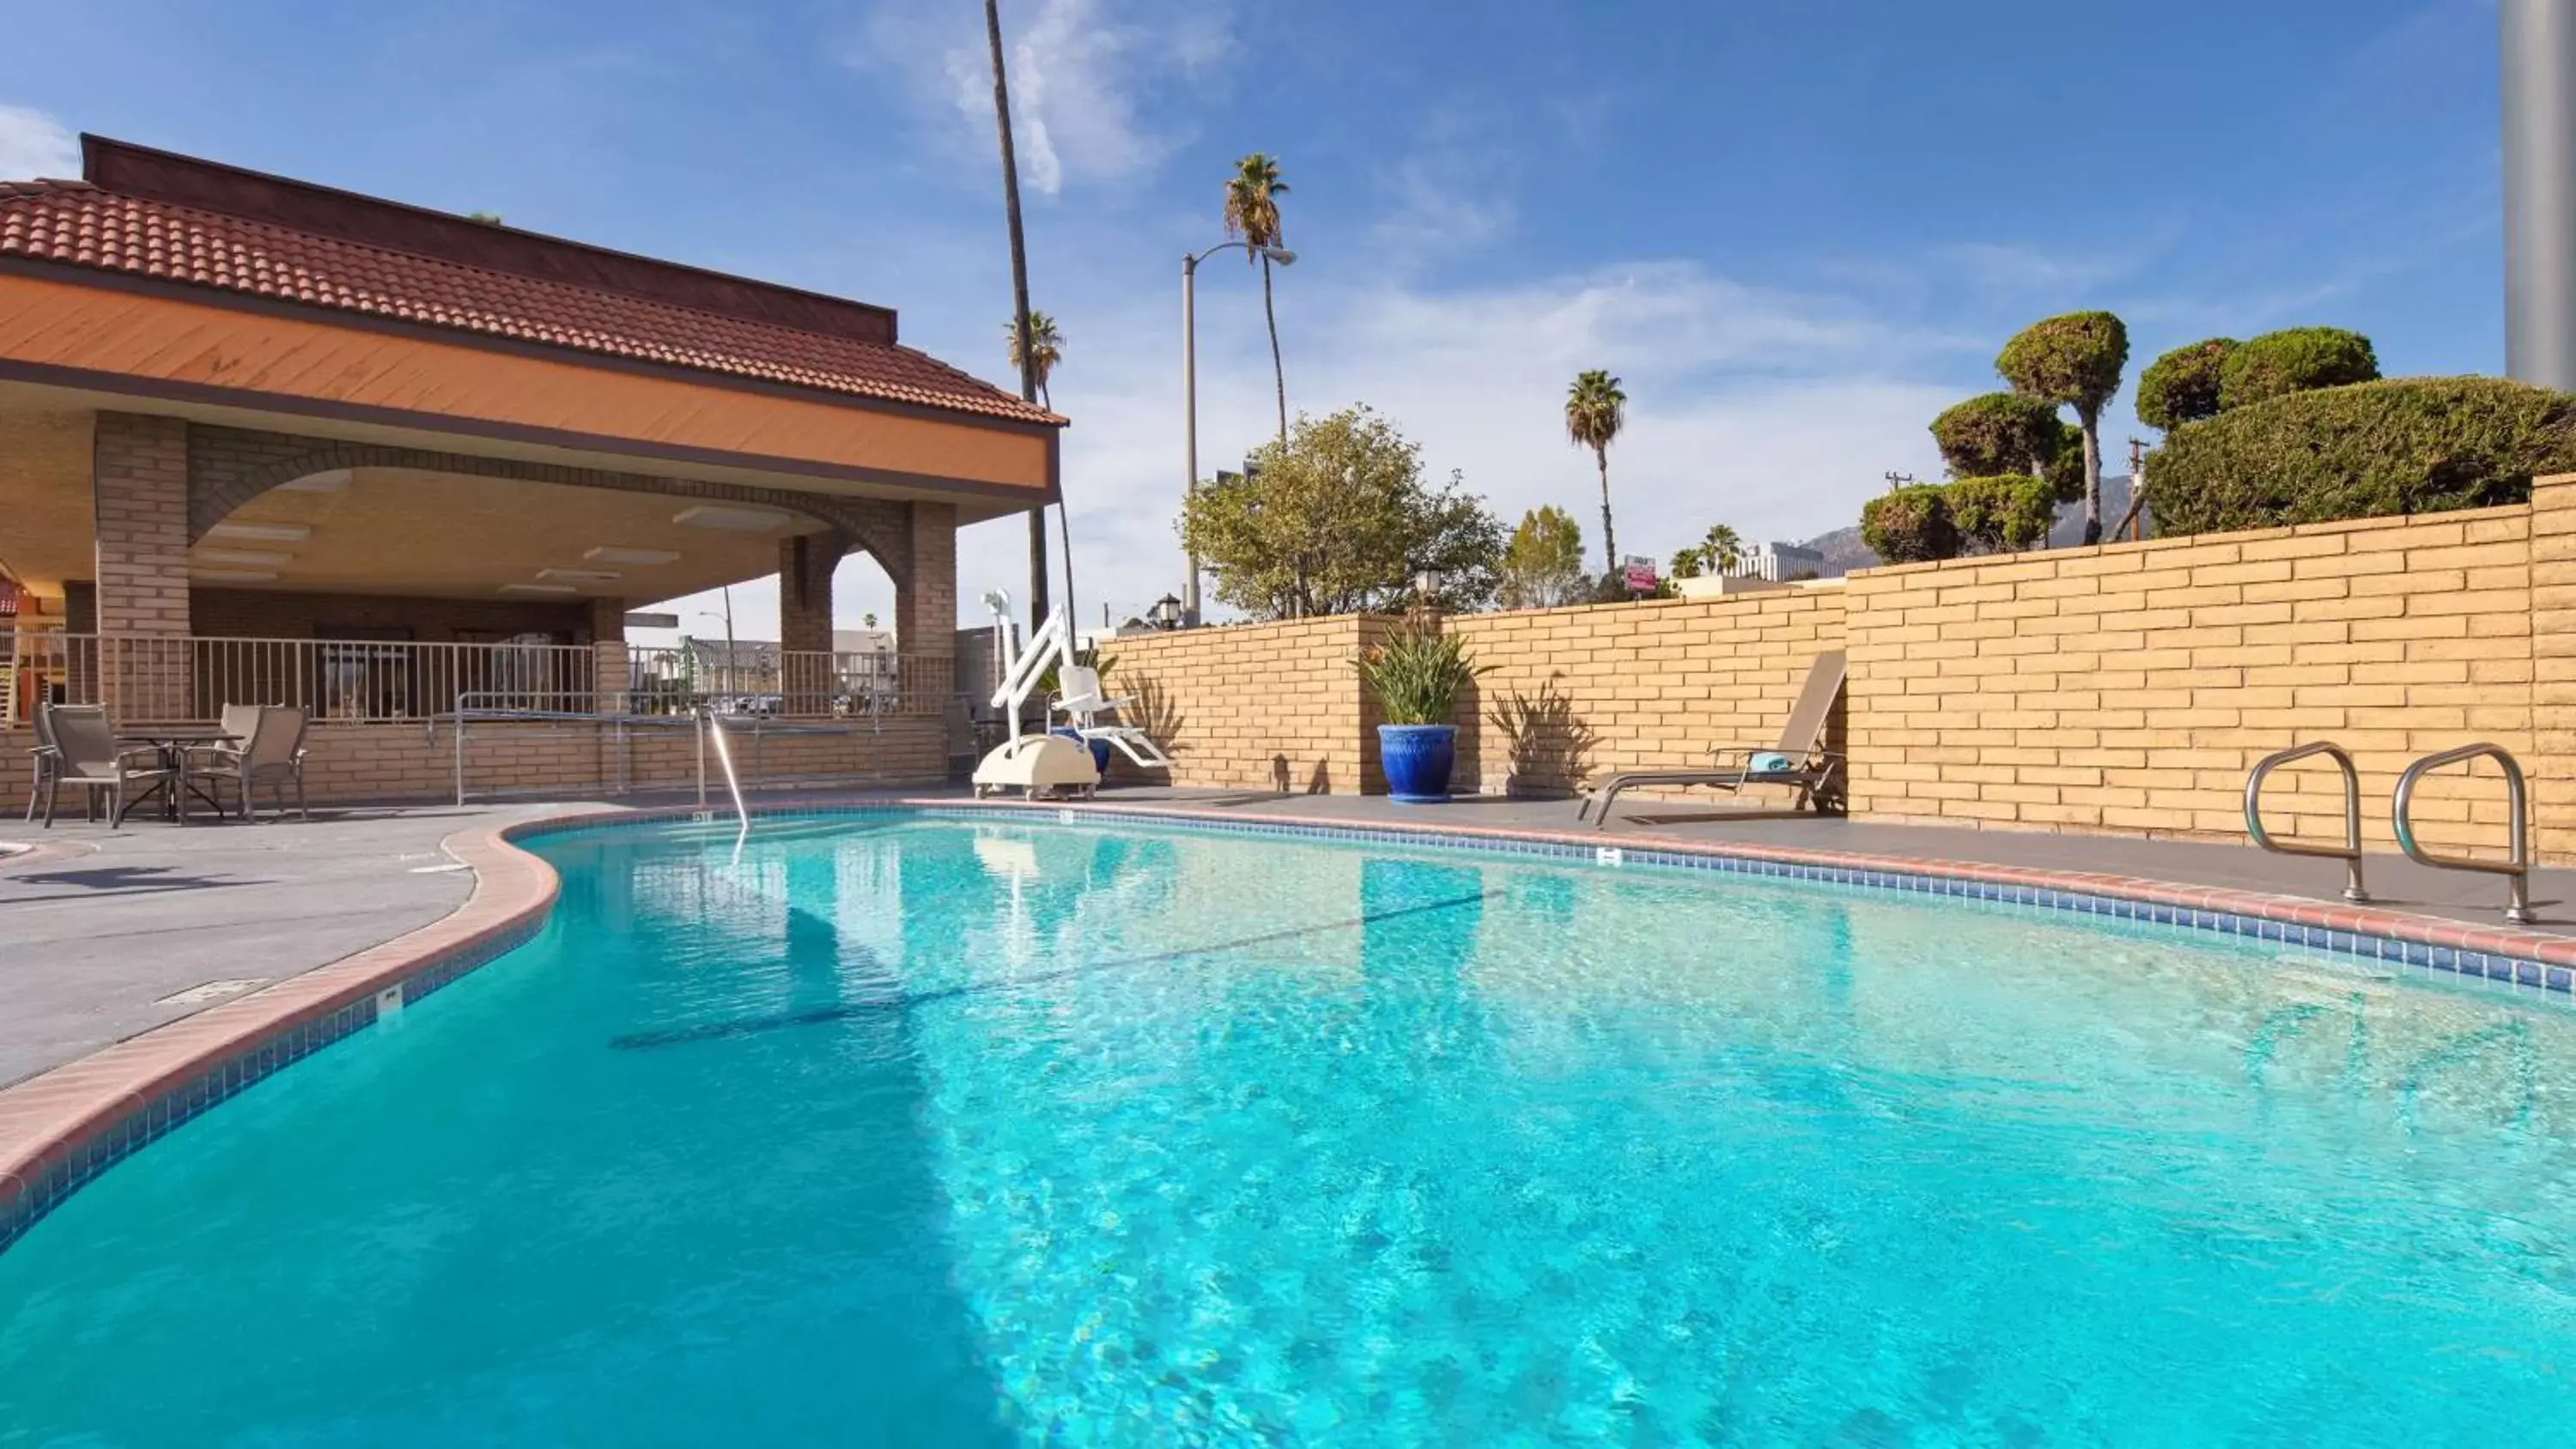 On site, Swimming Pool in Best Western Pasadena Inn